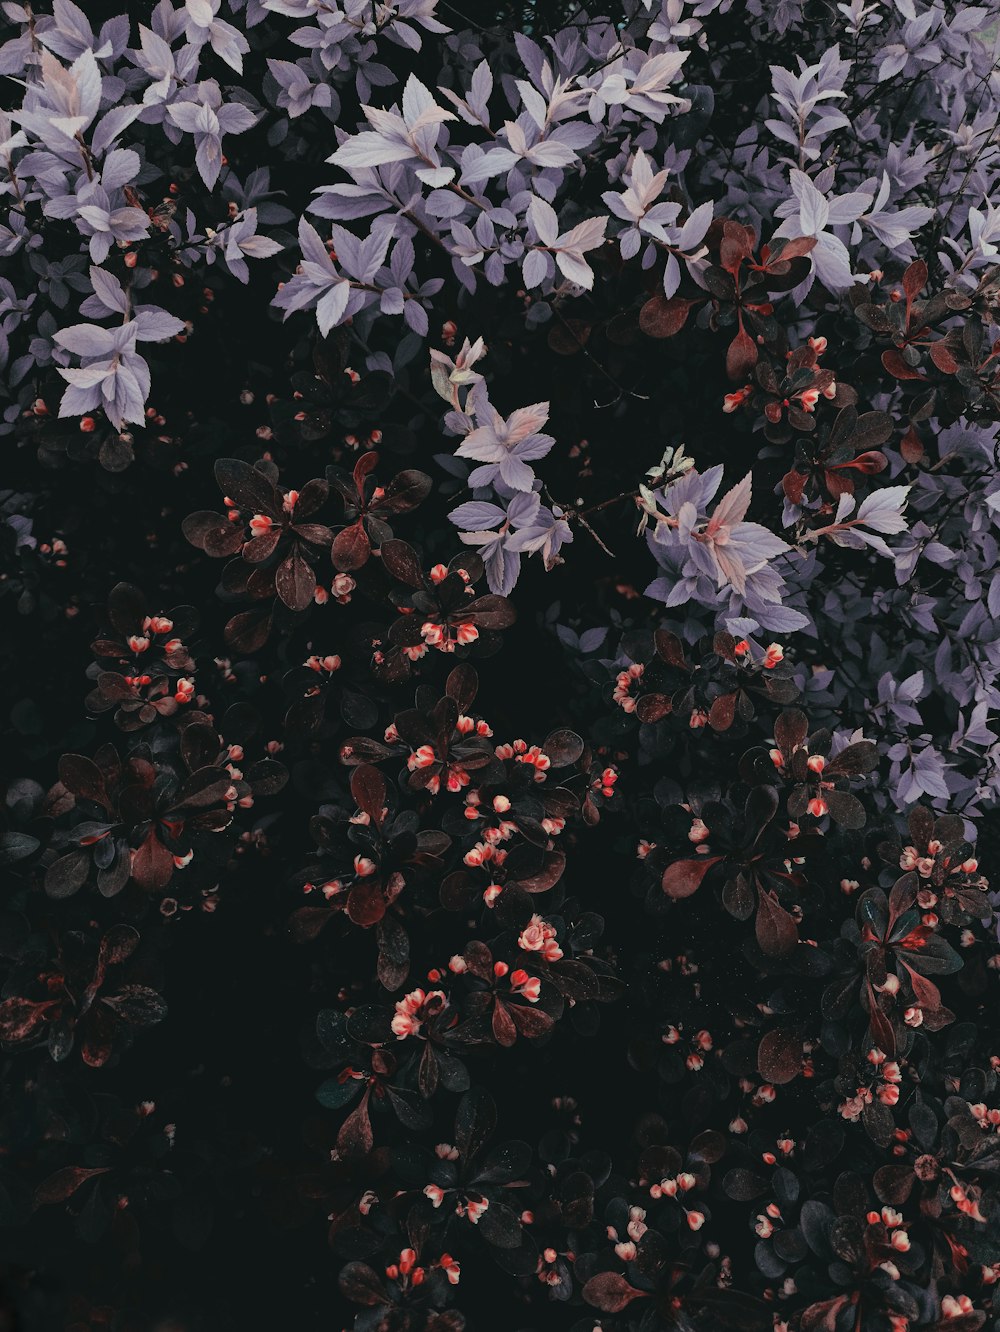 un bouquet de feuilles violettes et rouges sur un arbre